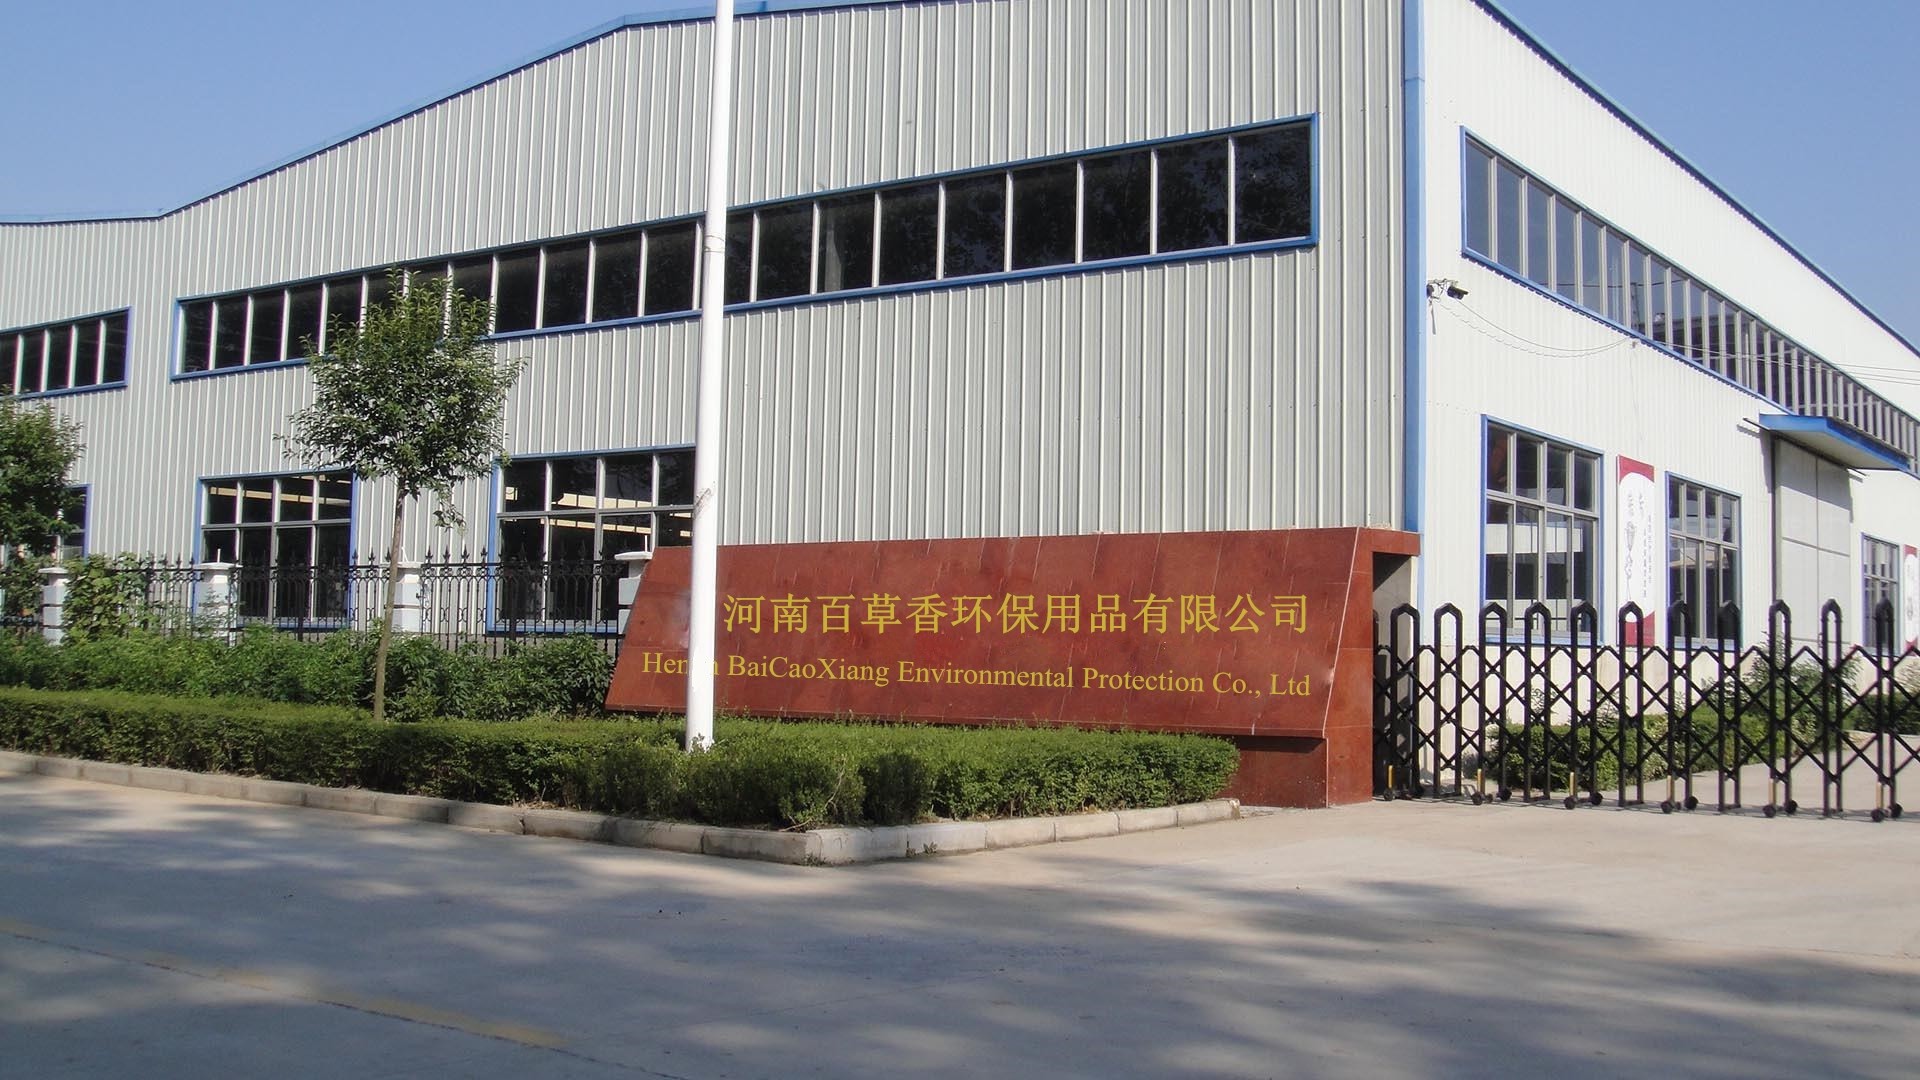 Henan BaiCaoXiang Environmental Protection Co., Ltd